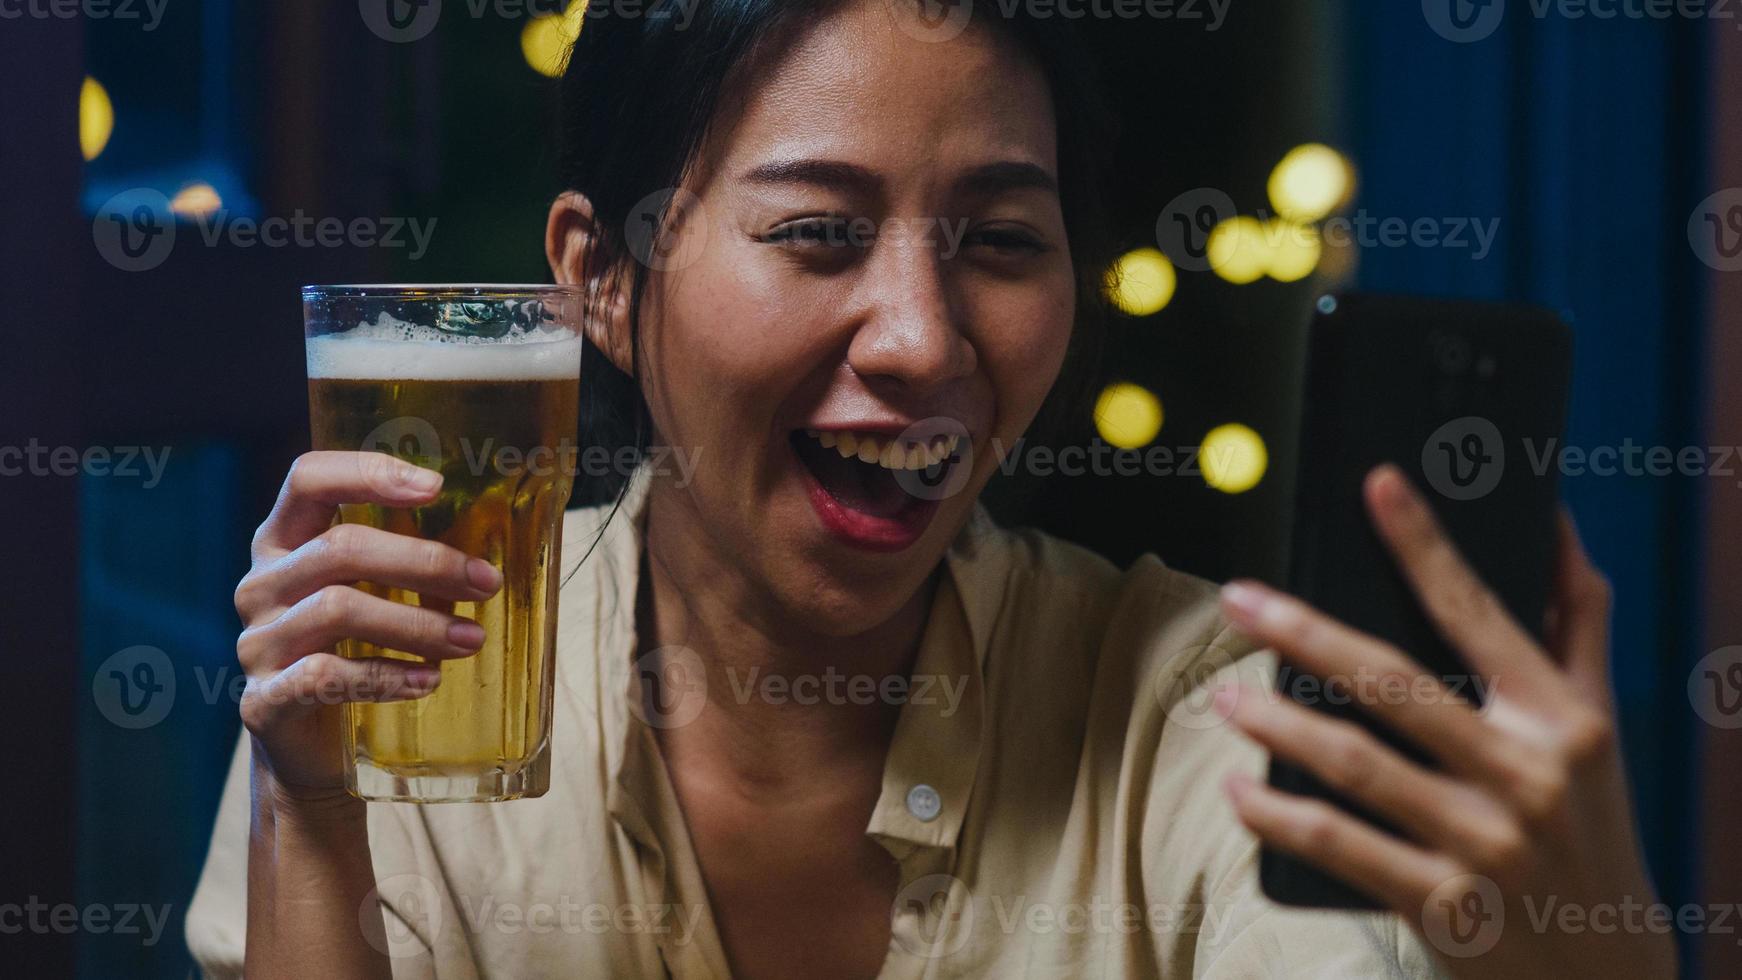 jeune femme asiatique buvant de la bière s'amusant moment heureux fête du nouvel an événement en ligne célébration par appel vidéo par téléphone à la maison la nuit. distanciation sociale, quarantaine pour la prévention des coronavirus. photo